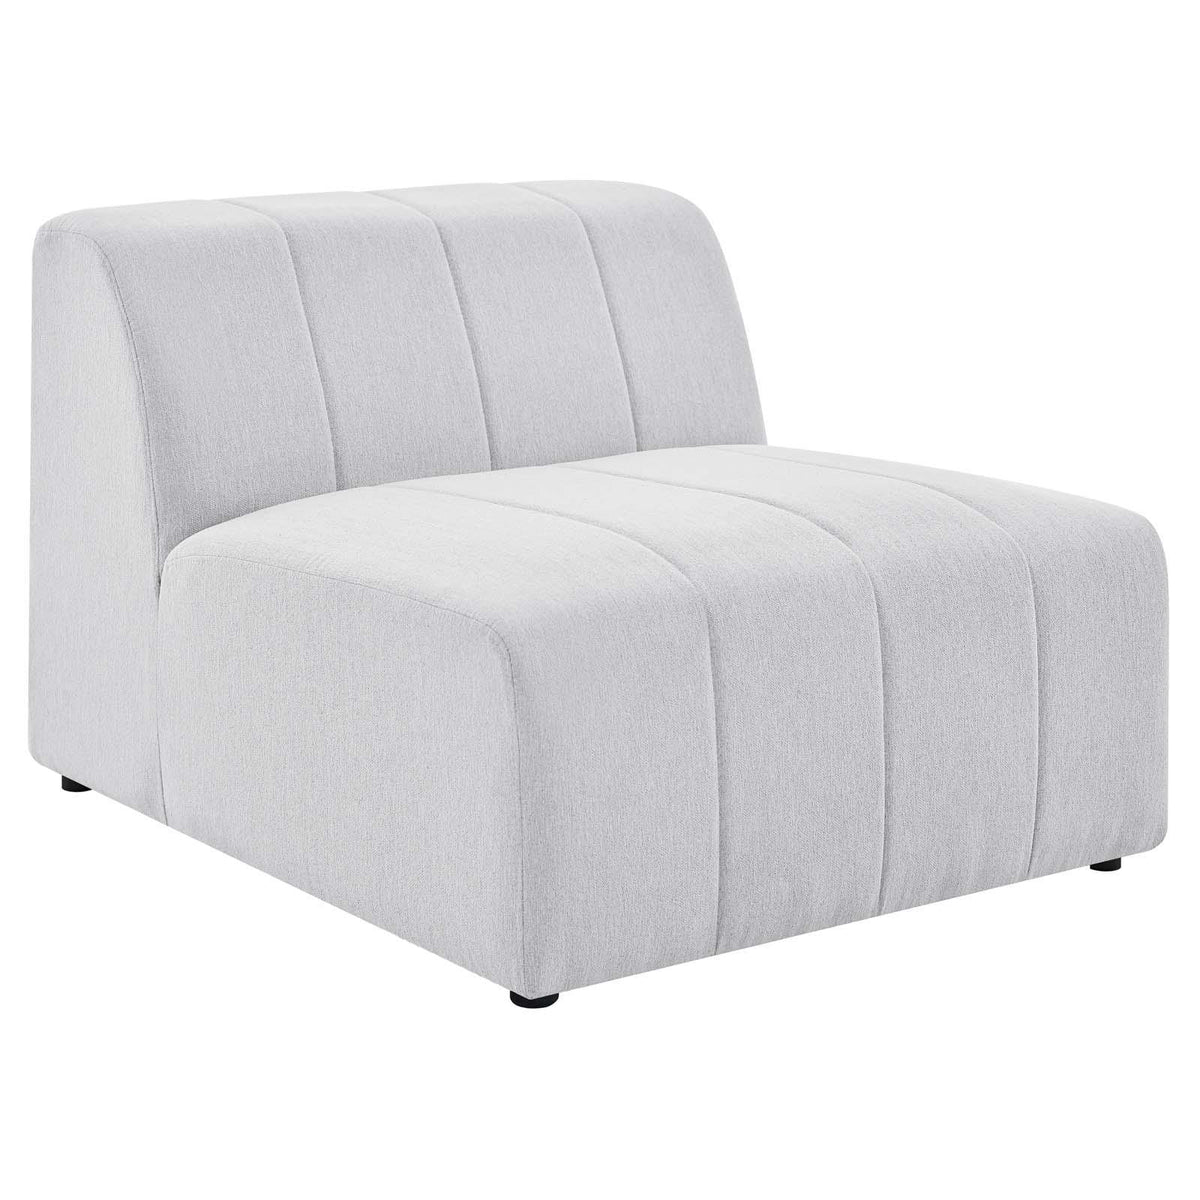 Modway Furniture Modern Bartlett Upholstered Fabric Armless Chair - EEI-4398